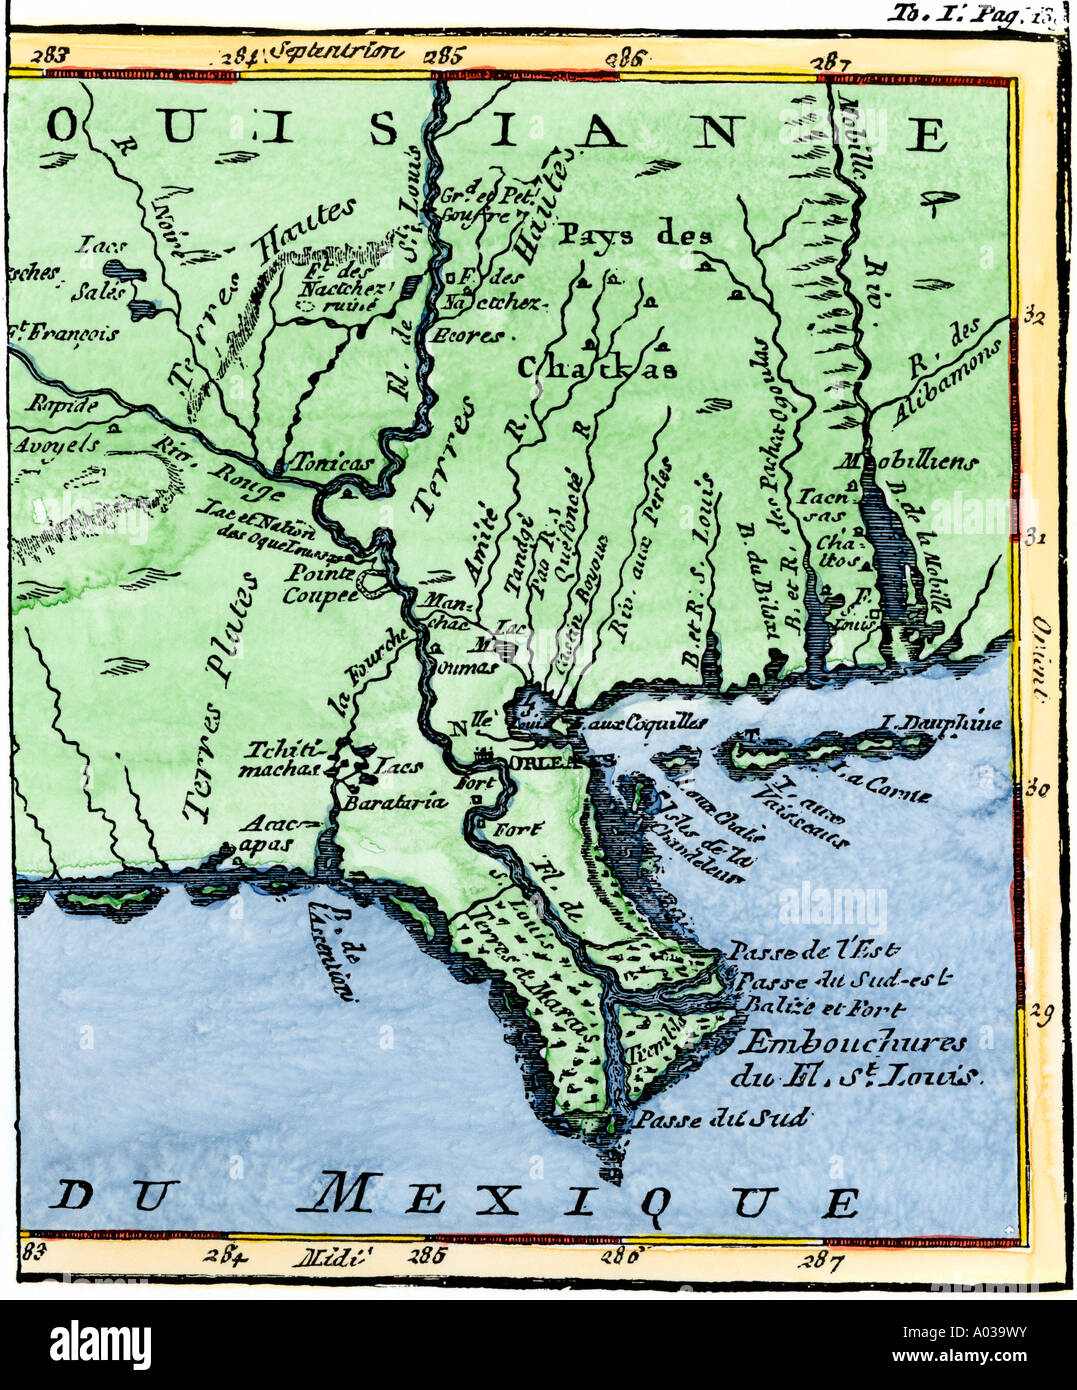 La Louisiane en 1744 montrant l'embouchure du fleuve Mississippi tandis qu'une partie de la Nouvelle-France. À la main, gravure sur bois Banque D'Images